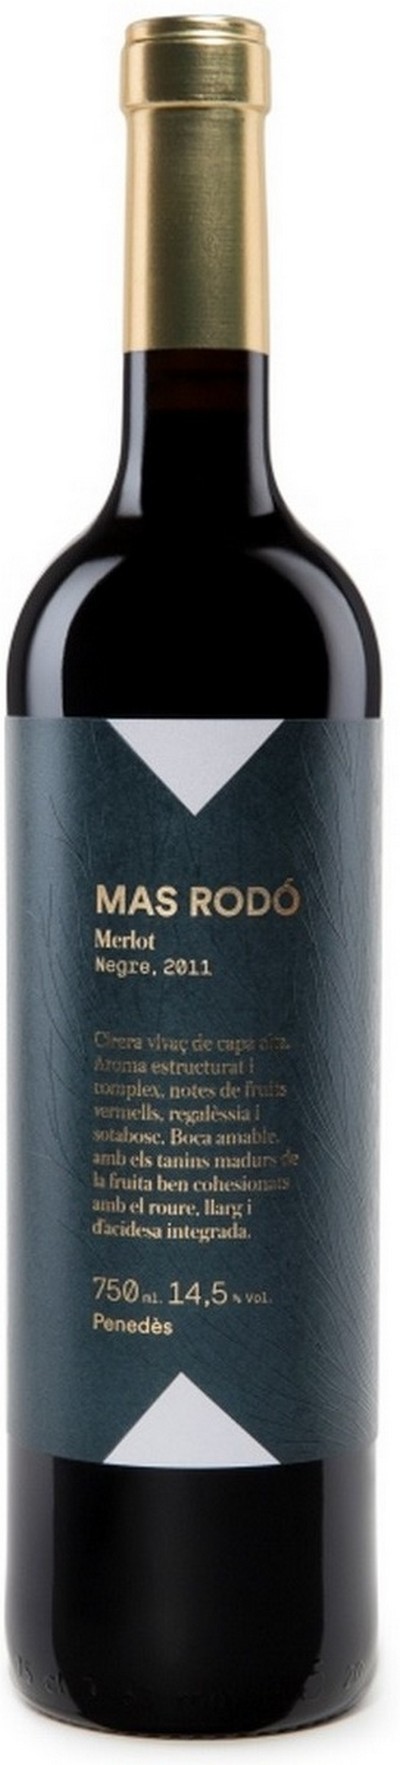 mas-rodo-merlot-2012